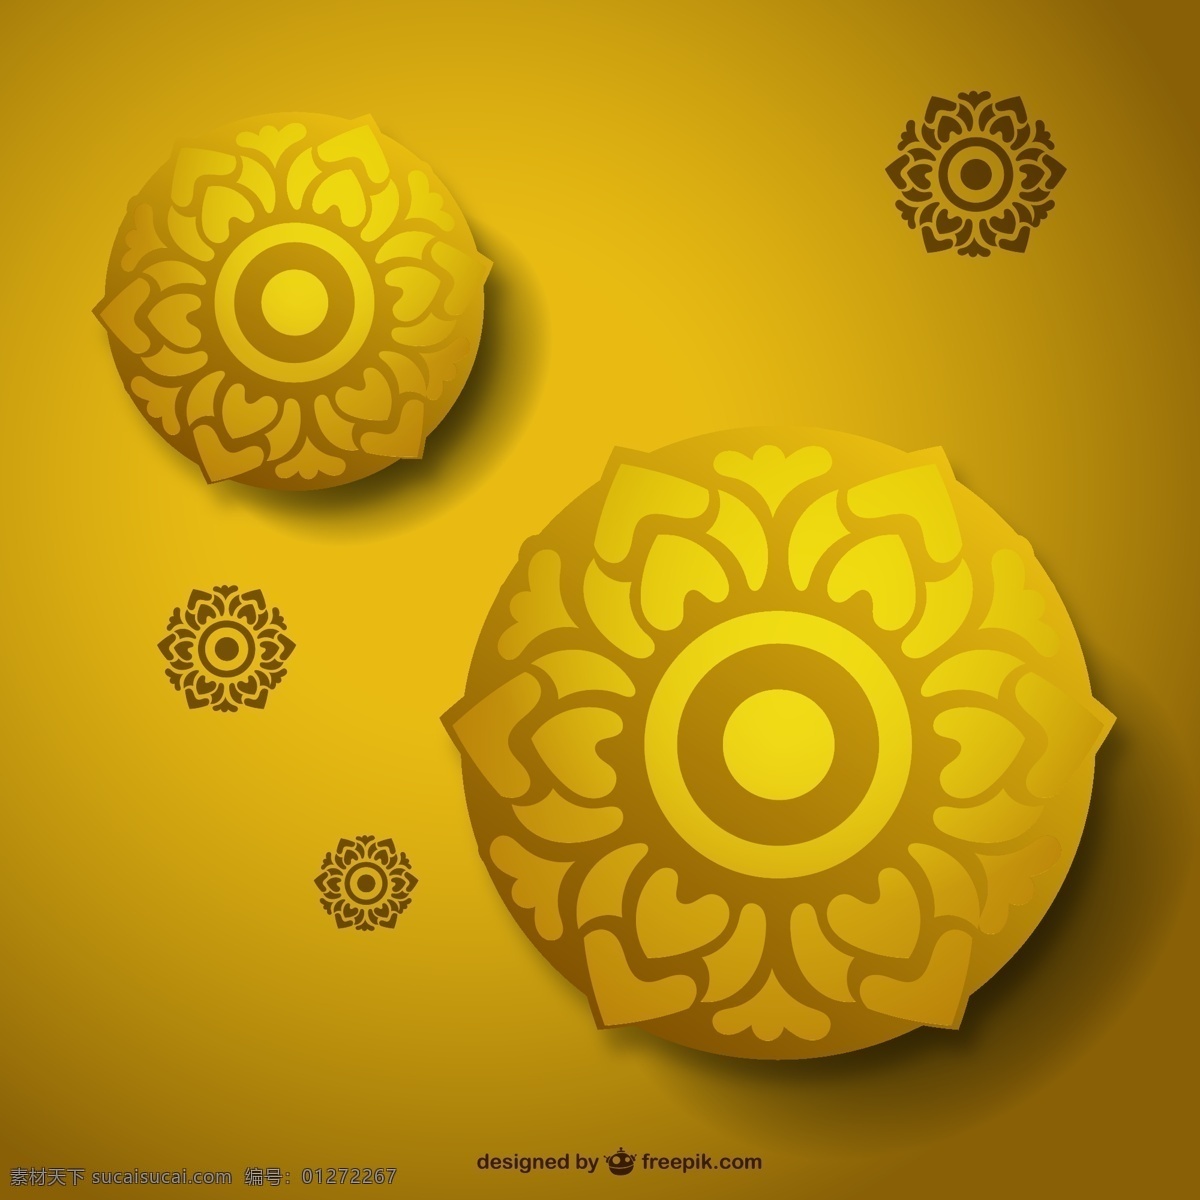 金色花朵 金色 花朵 圆形 背景 花纹 莲花 矢量图 广告素材 平面素材